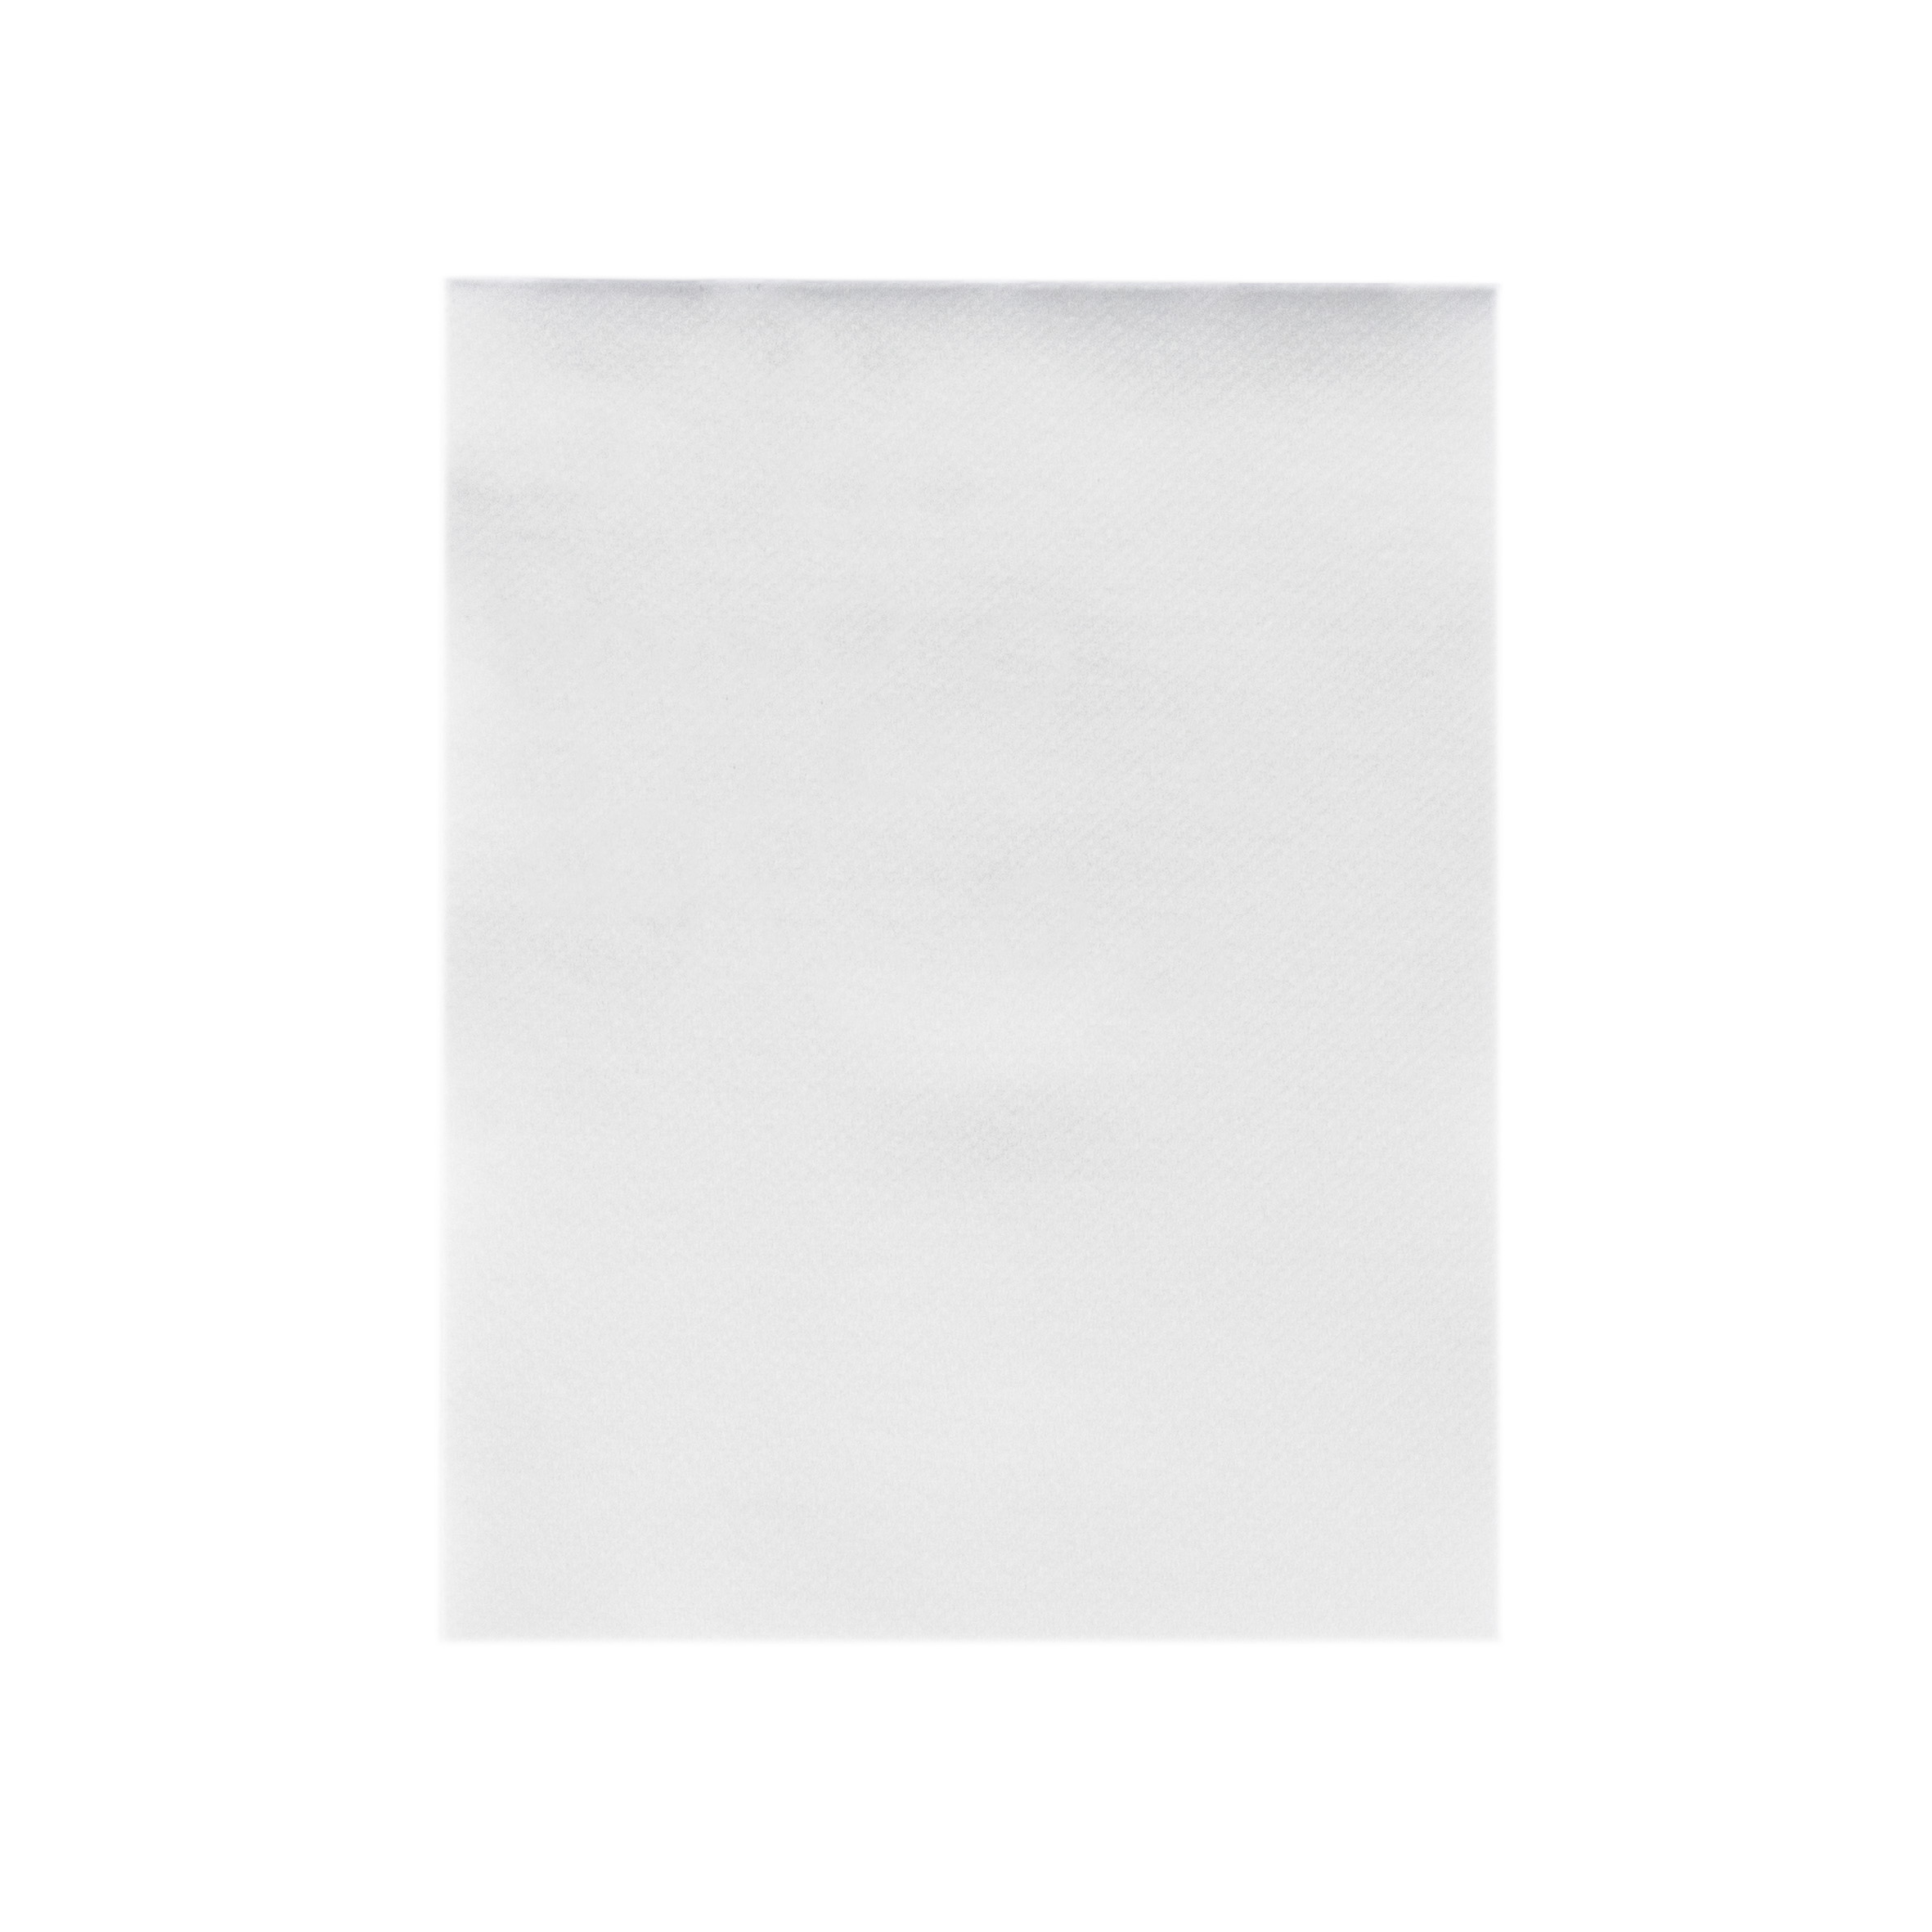 Mank Handtuch Linclass-Light 1/4 Falz, 40 x 30 cm, Basic weiss